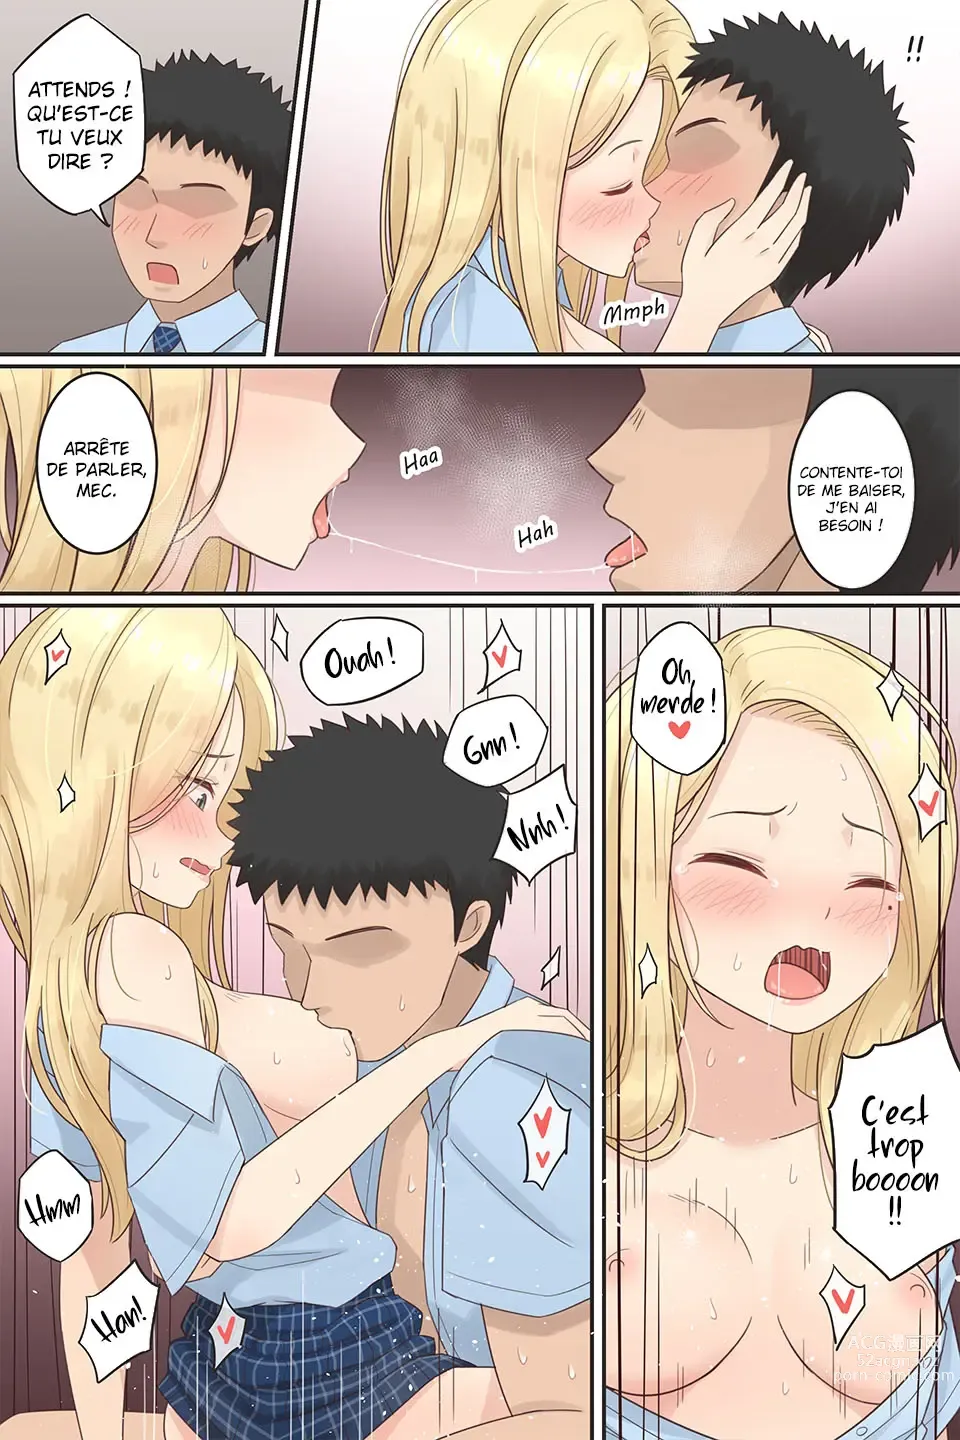 Page 6 of doujinshi Quand mon ami pervers est devenue une fille.